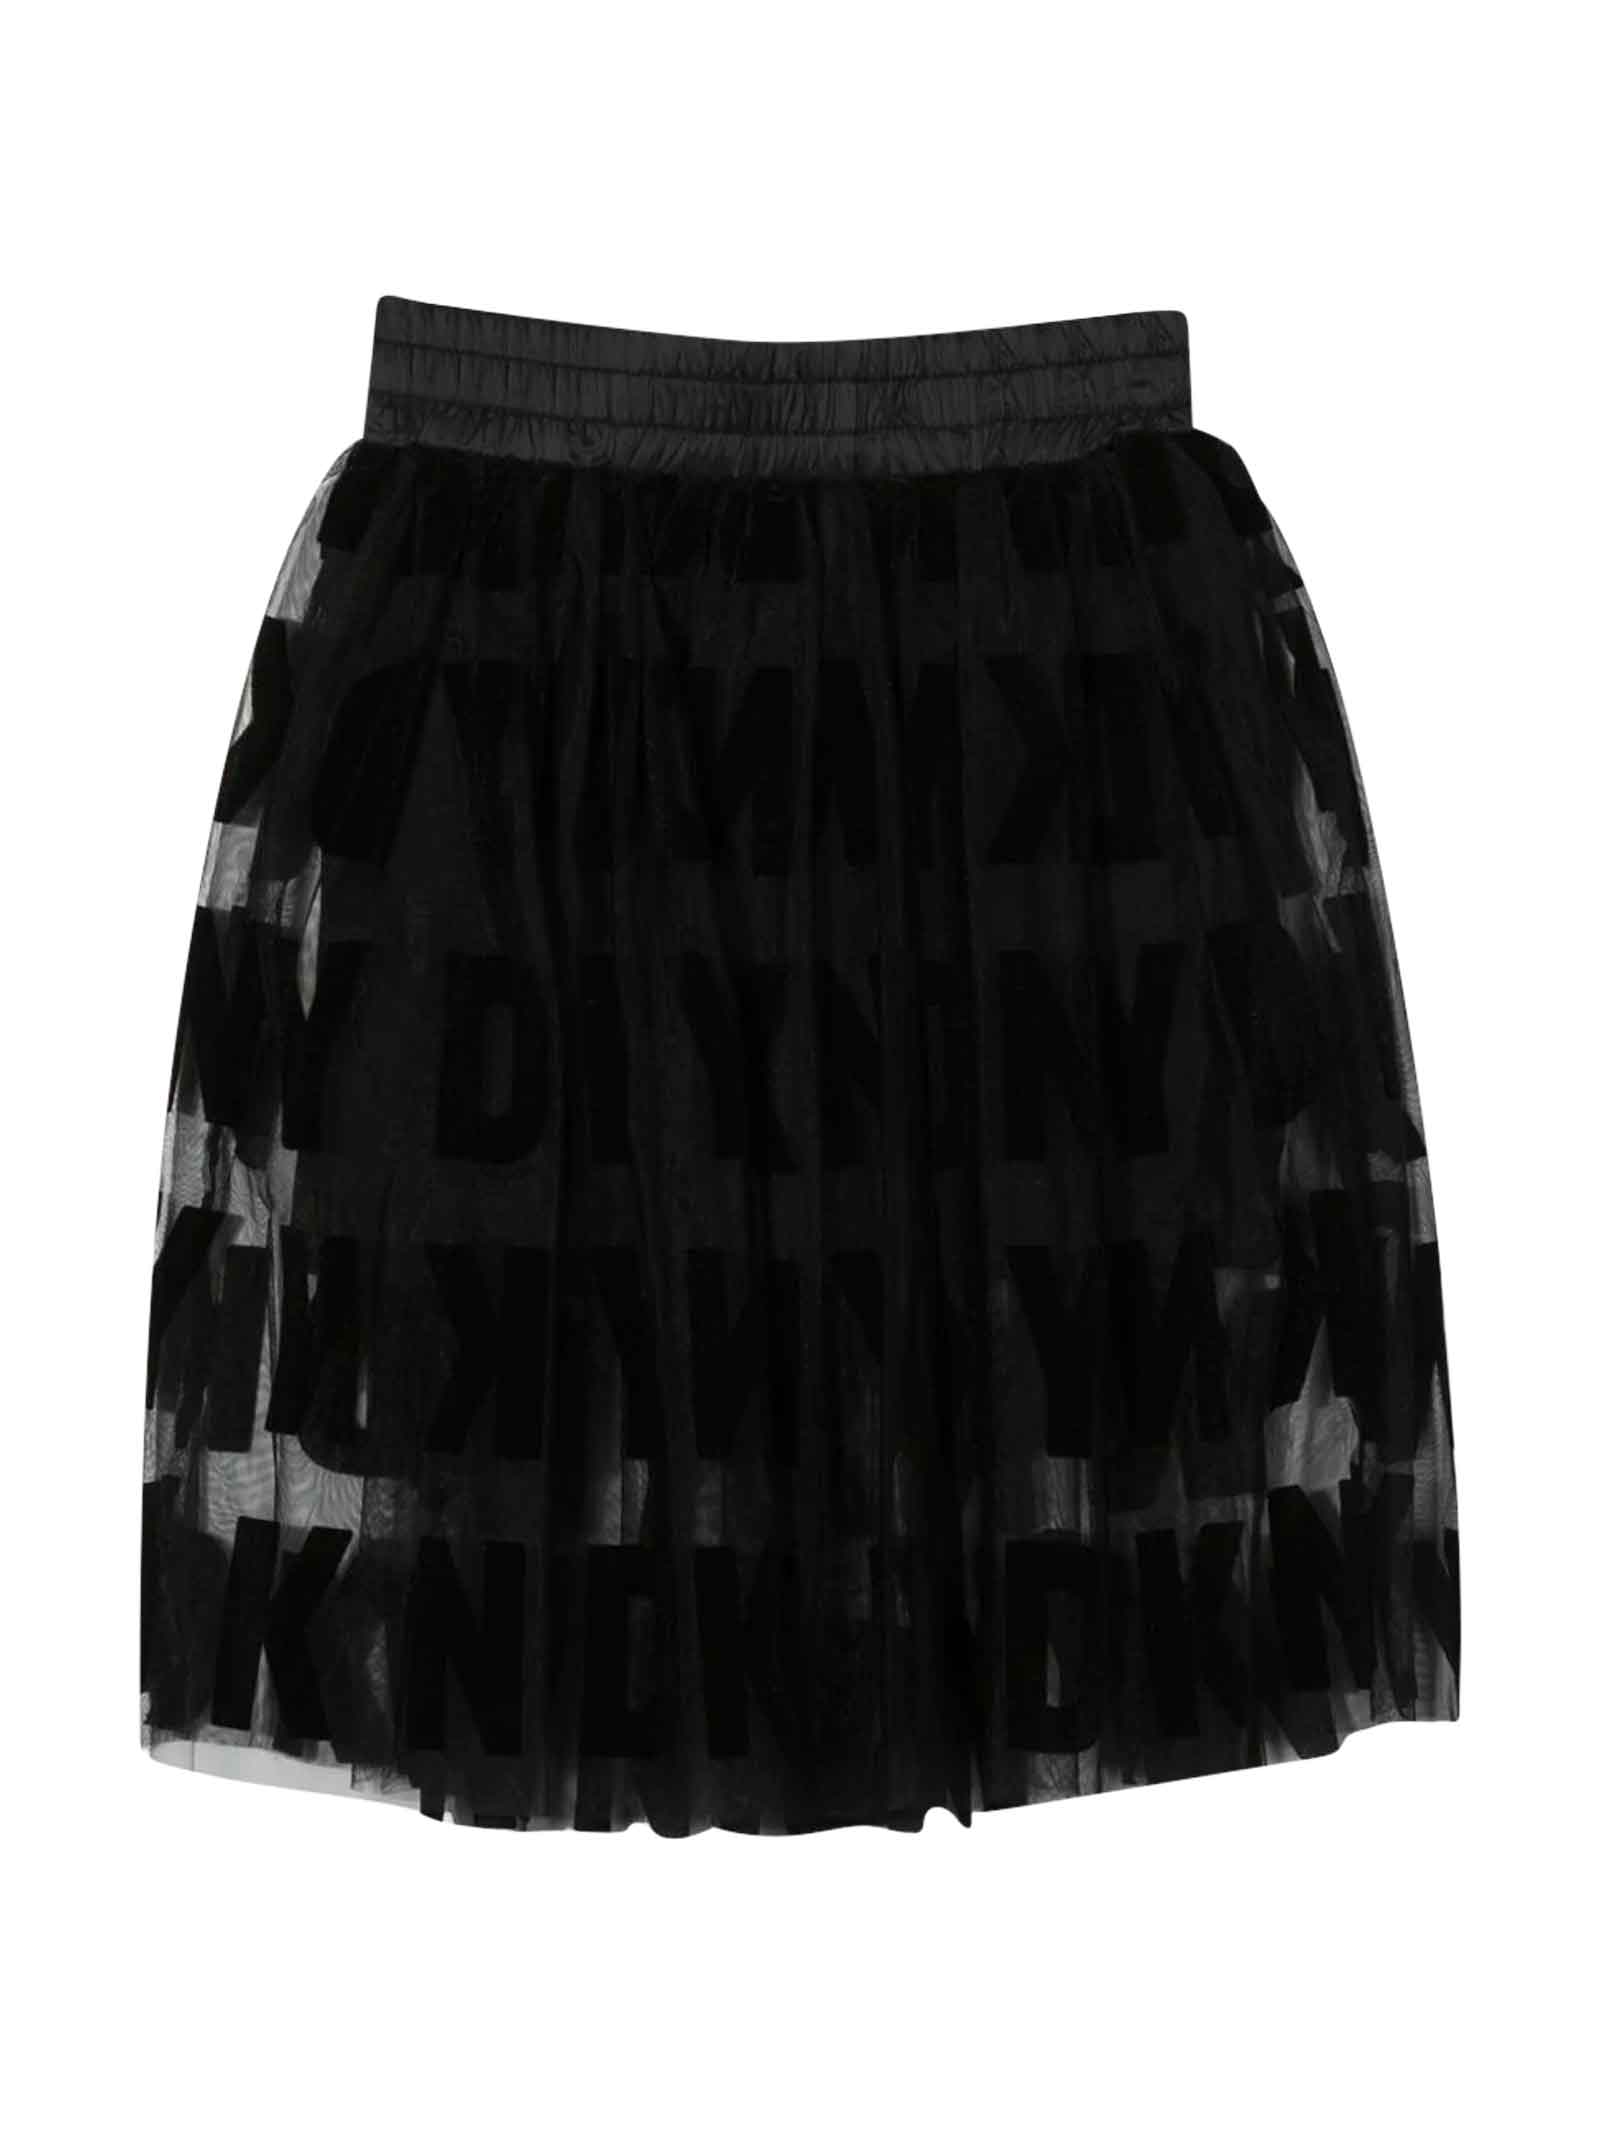 DKNY Black Skirt Girl.